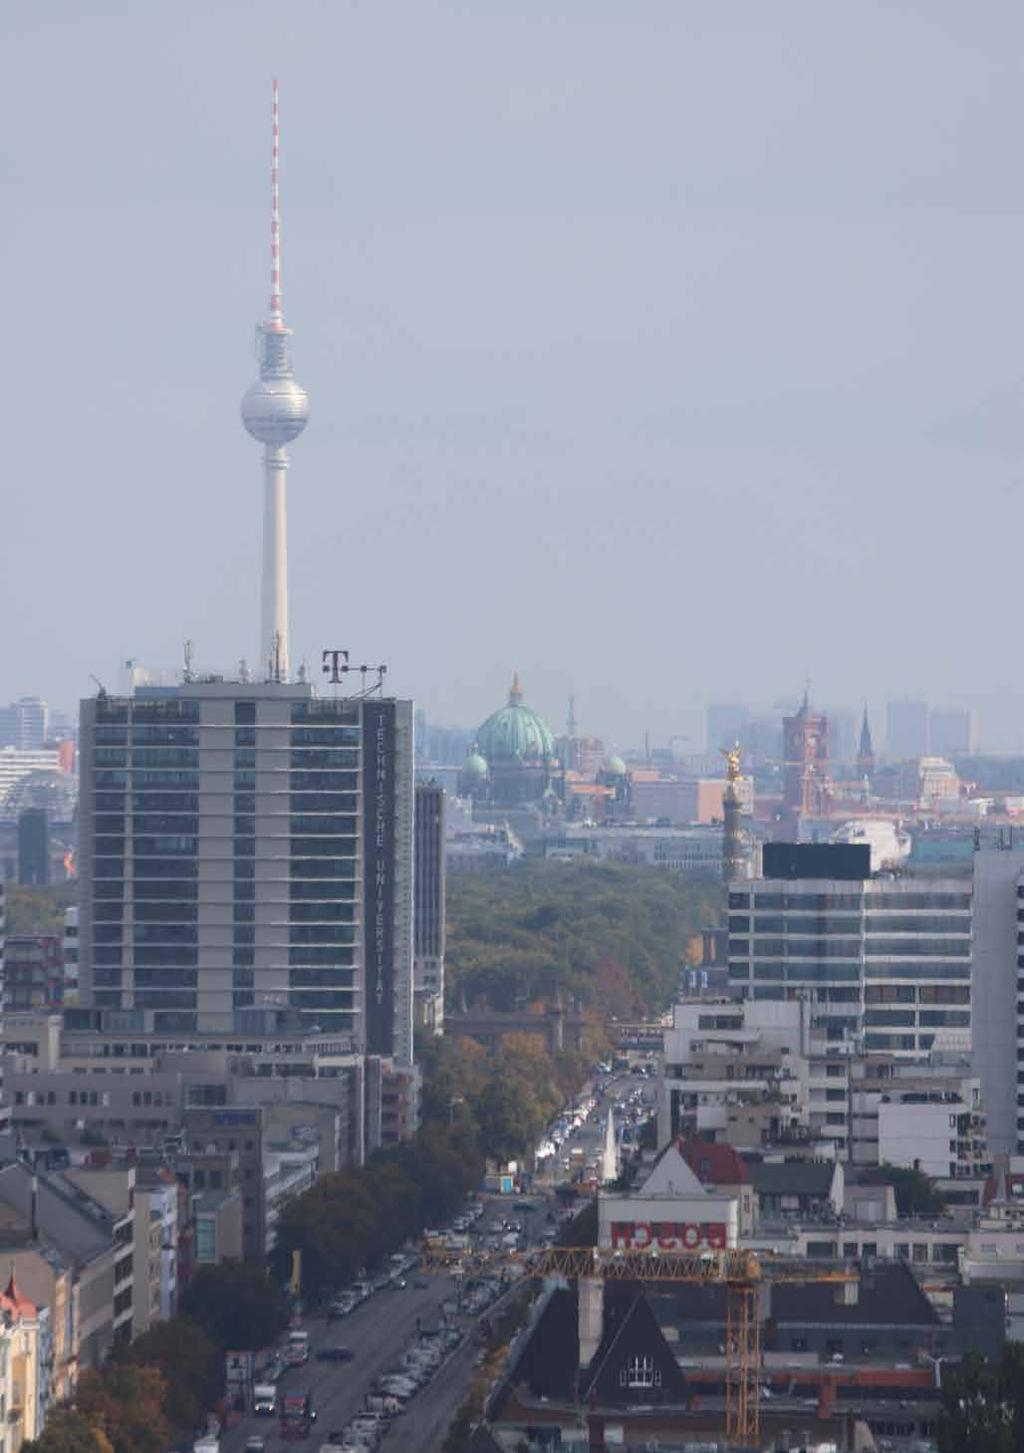 Renditehäuser in Berlin Marktbericht 201 2 Der Immobilienmarkt Berlin 201 im Überblick Im Jahr 201 verzeichnete der Berliner Immobilienmarkt insgesamt leichte Umsatzrückgänge, erzielte damit aber mit